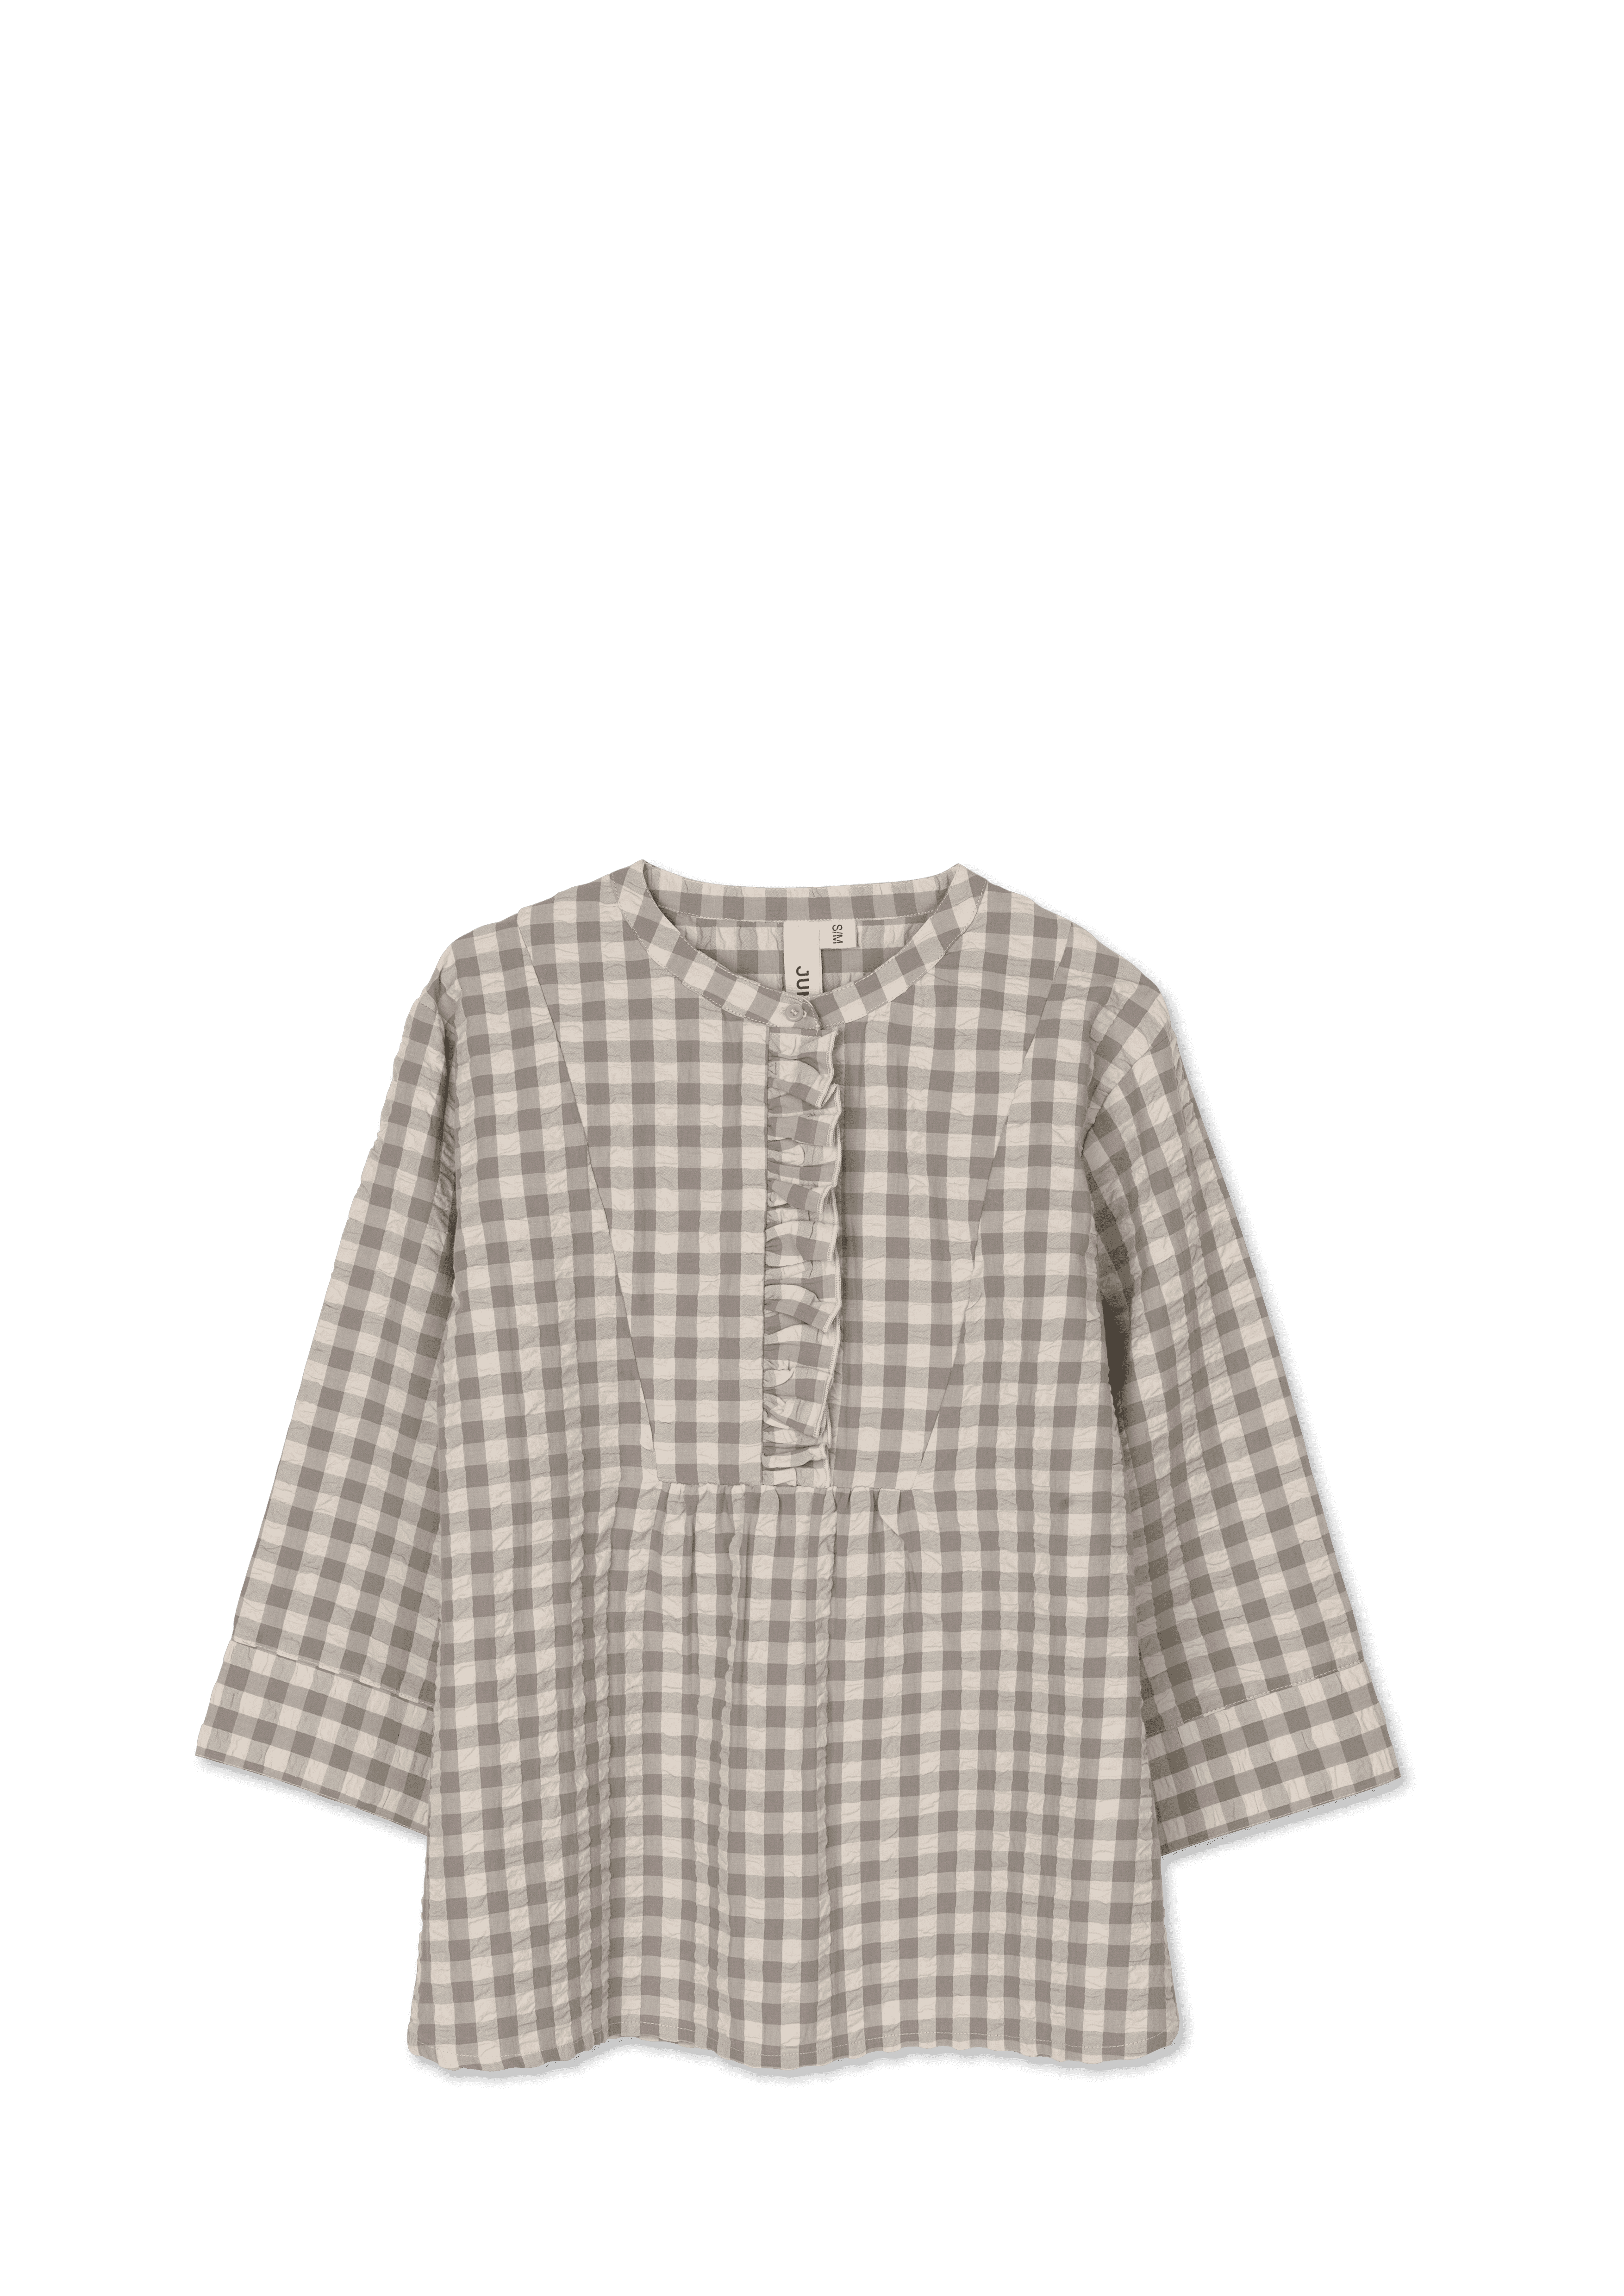 Irene shirt XS